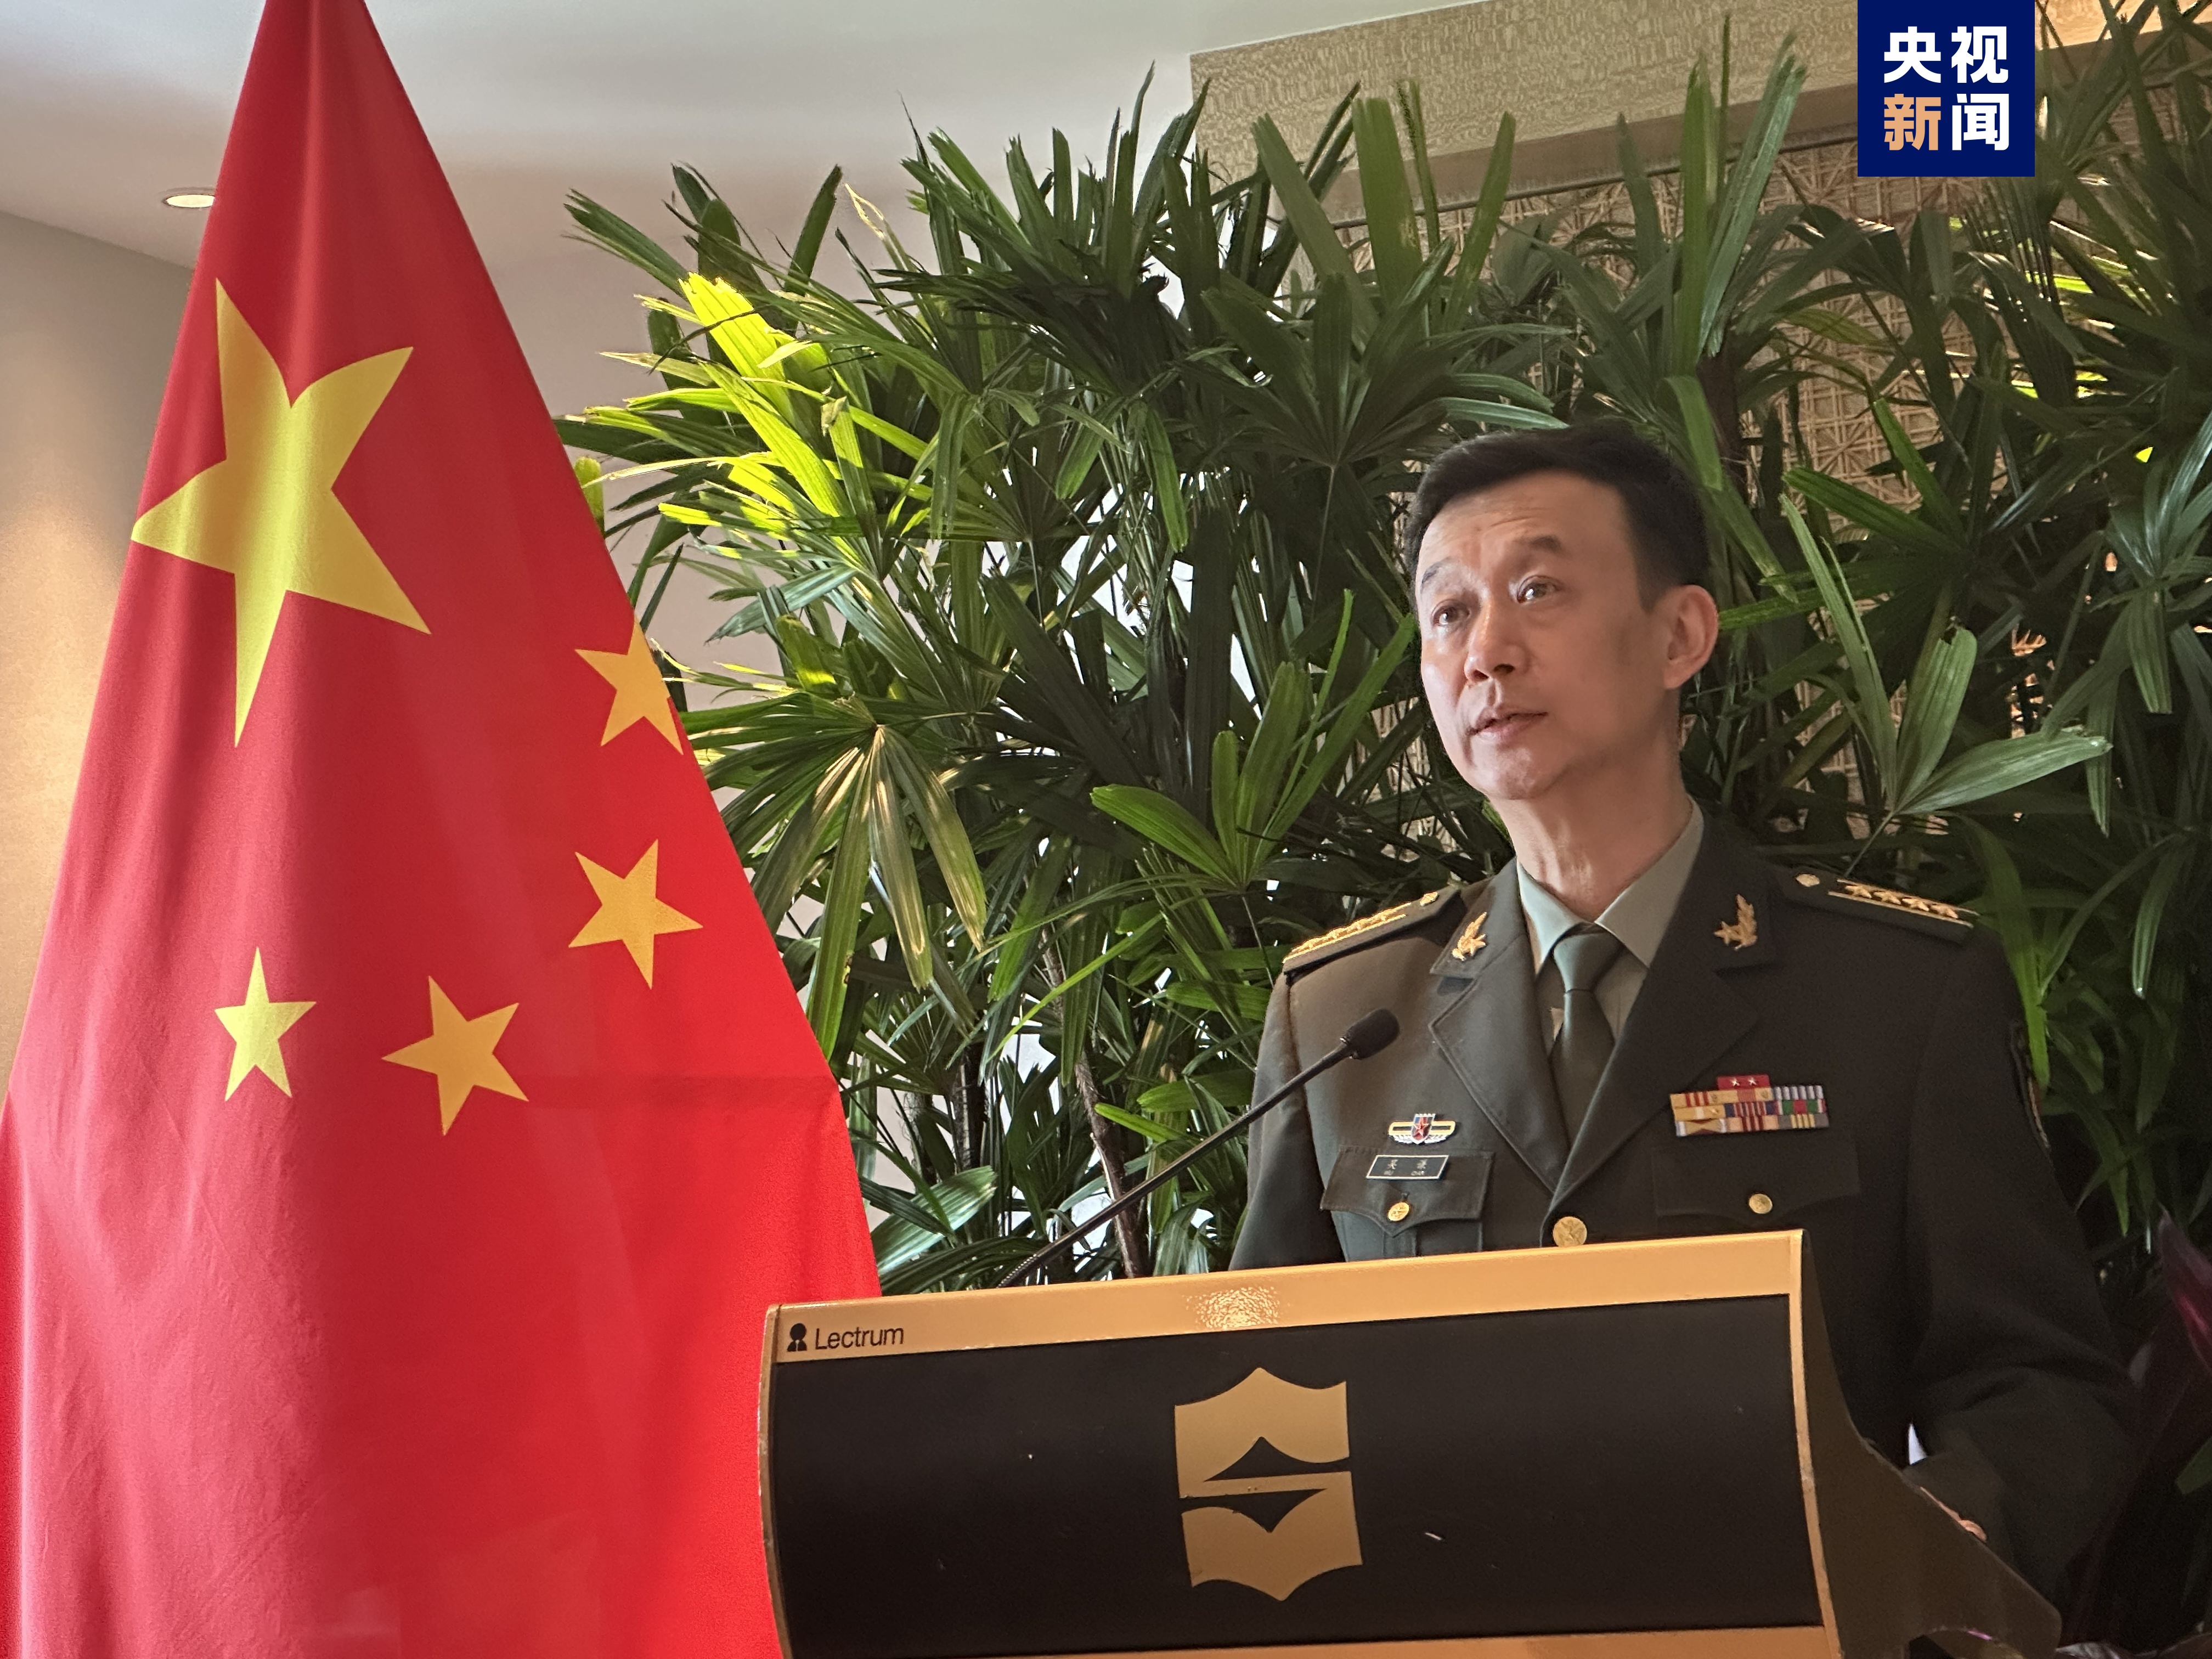 吴谦说,中国国防部长董军与美国国防部长奥斯汀就两国关系及台湾,南海